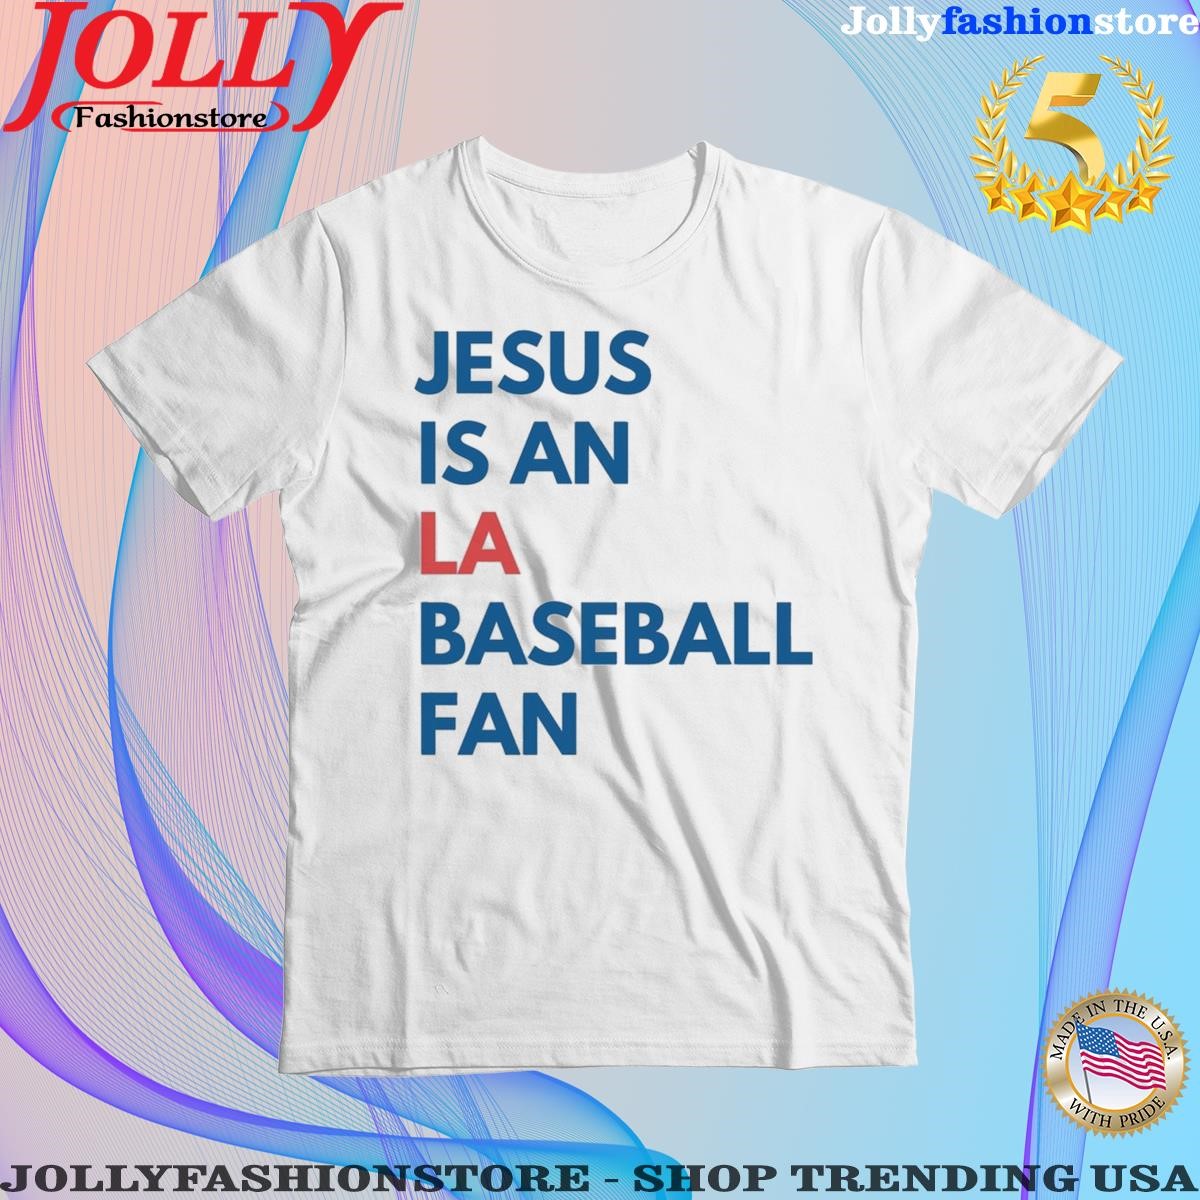 Jesus is an los angeles Dodgers basketball fan T-shirt